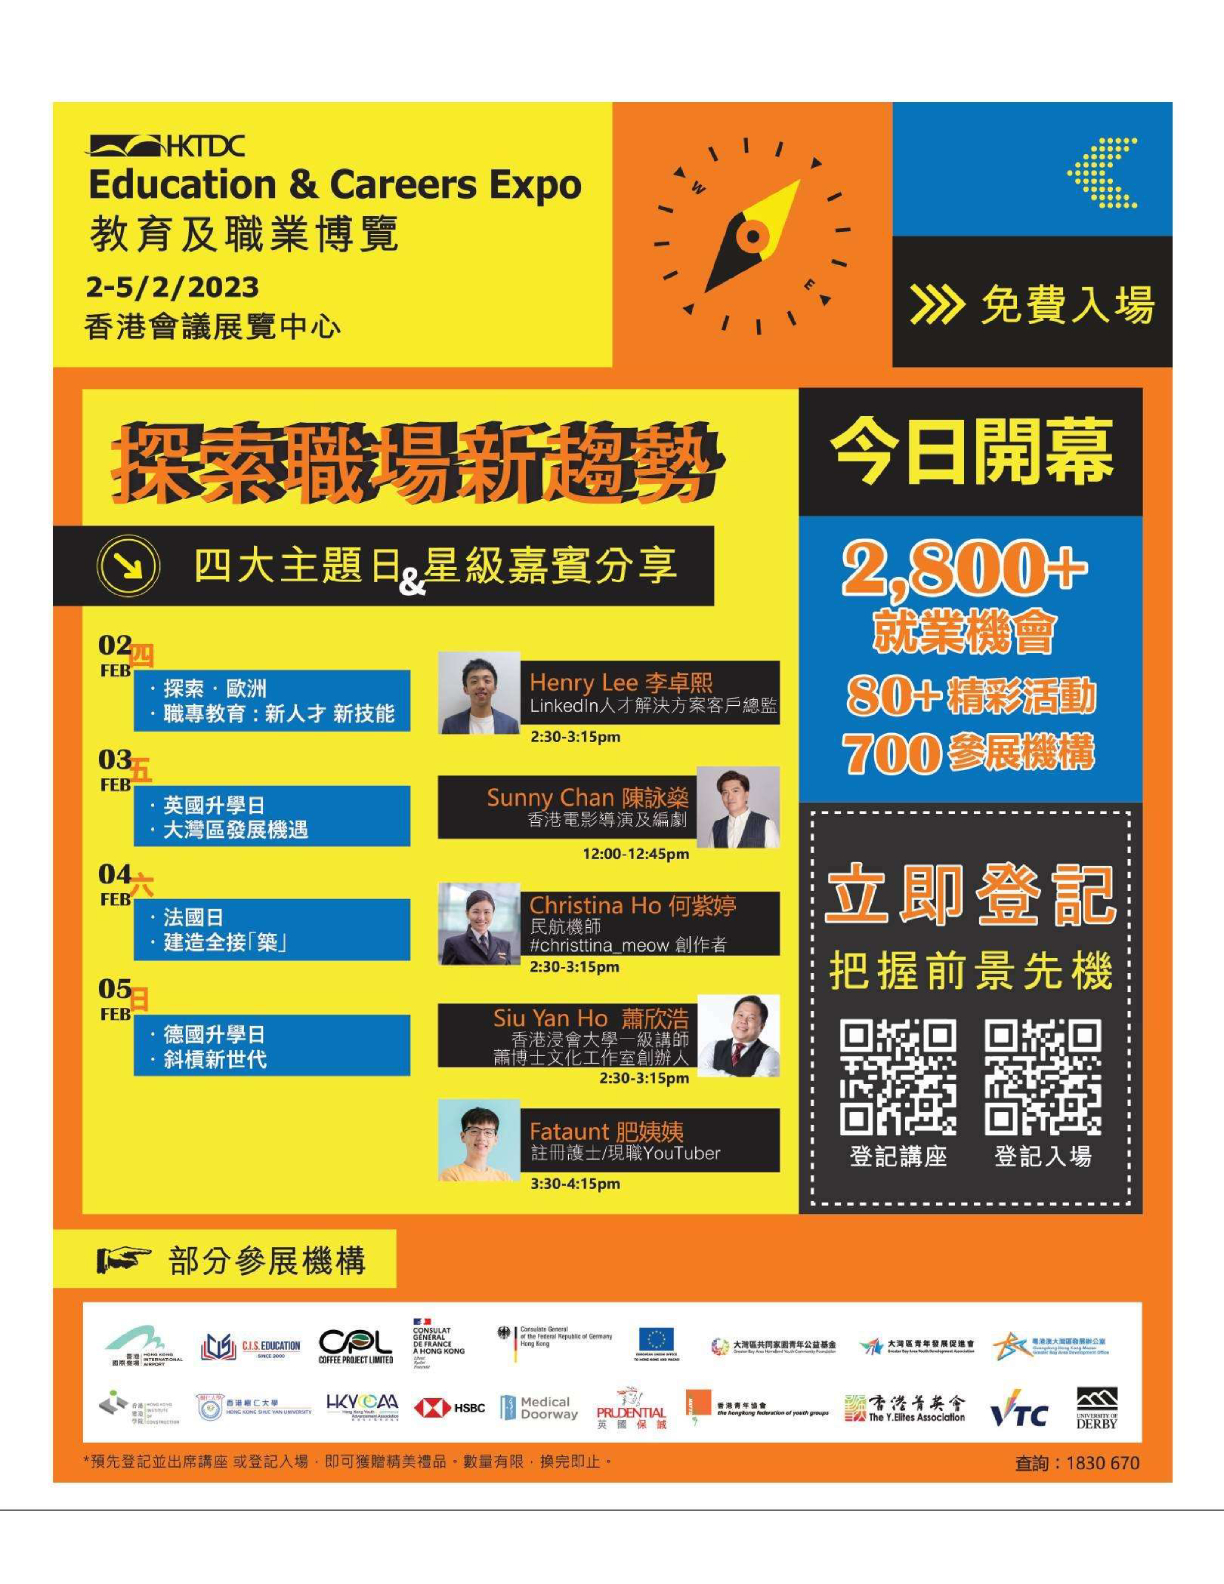 香港會議展覽中心: 教育及職業博覽 免費入場 至2月5日